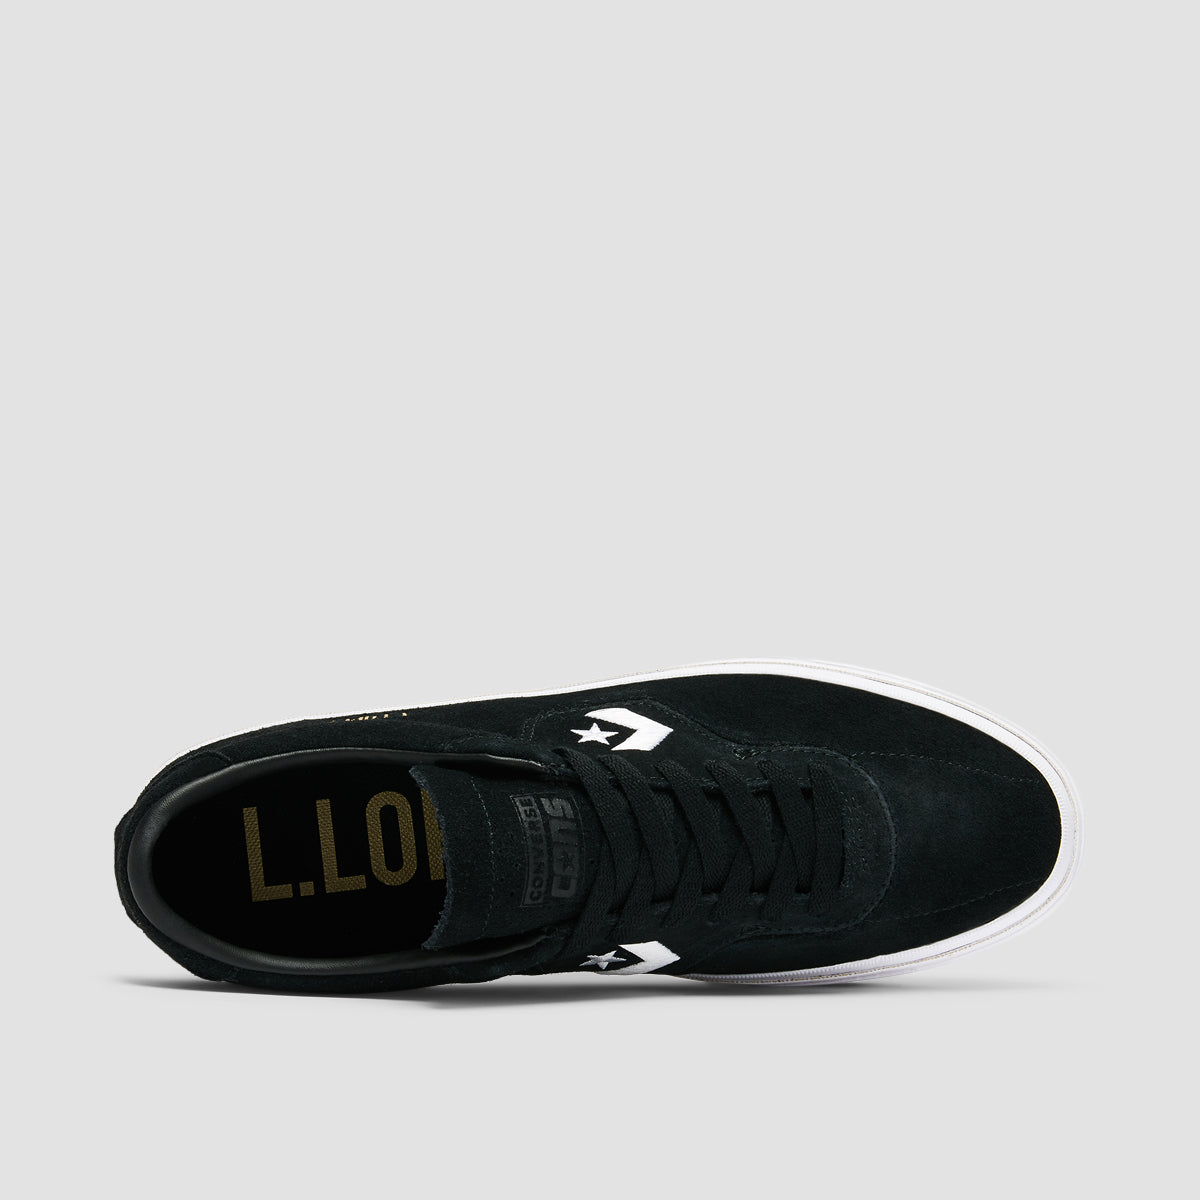 Converse Louie Lopez Pro Shoes - Black/Black/White